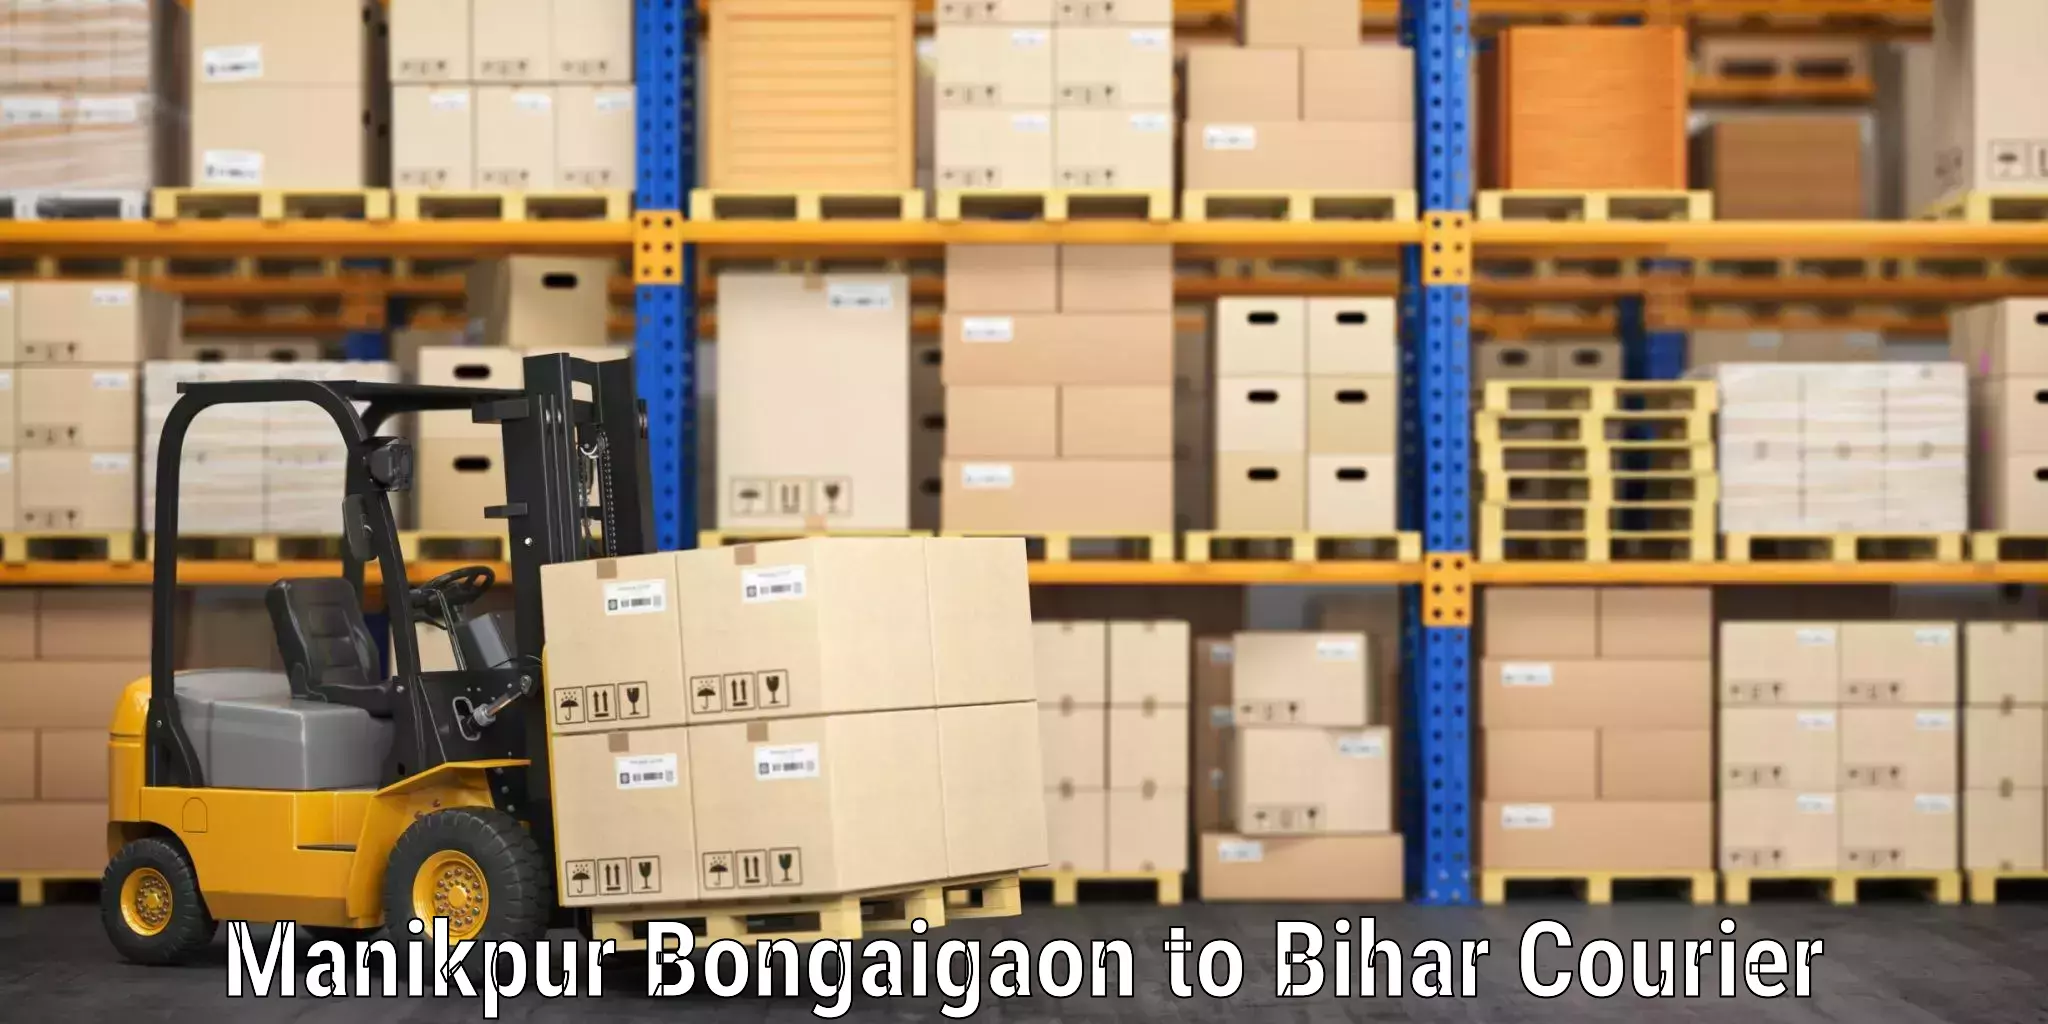 Luggage shipping specialists Manikpur Bongaigaon to Sugauli